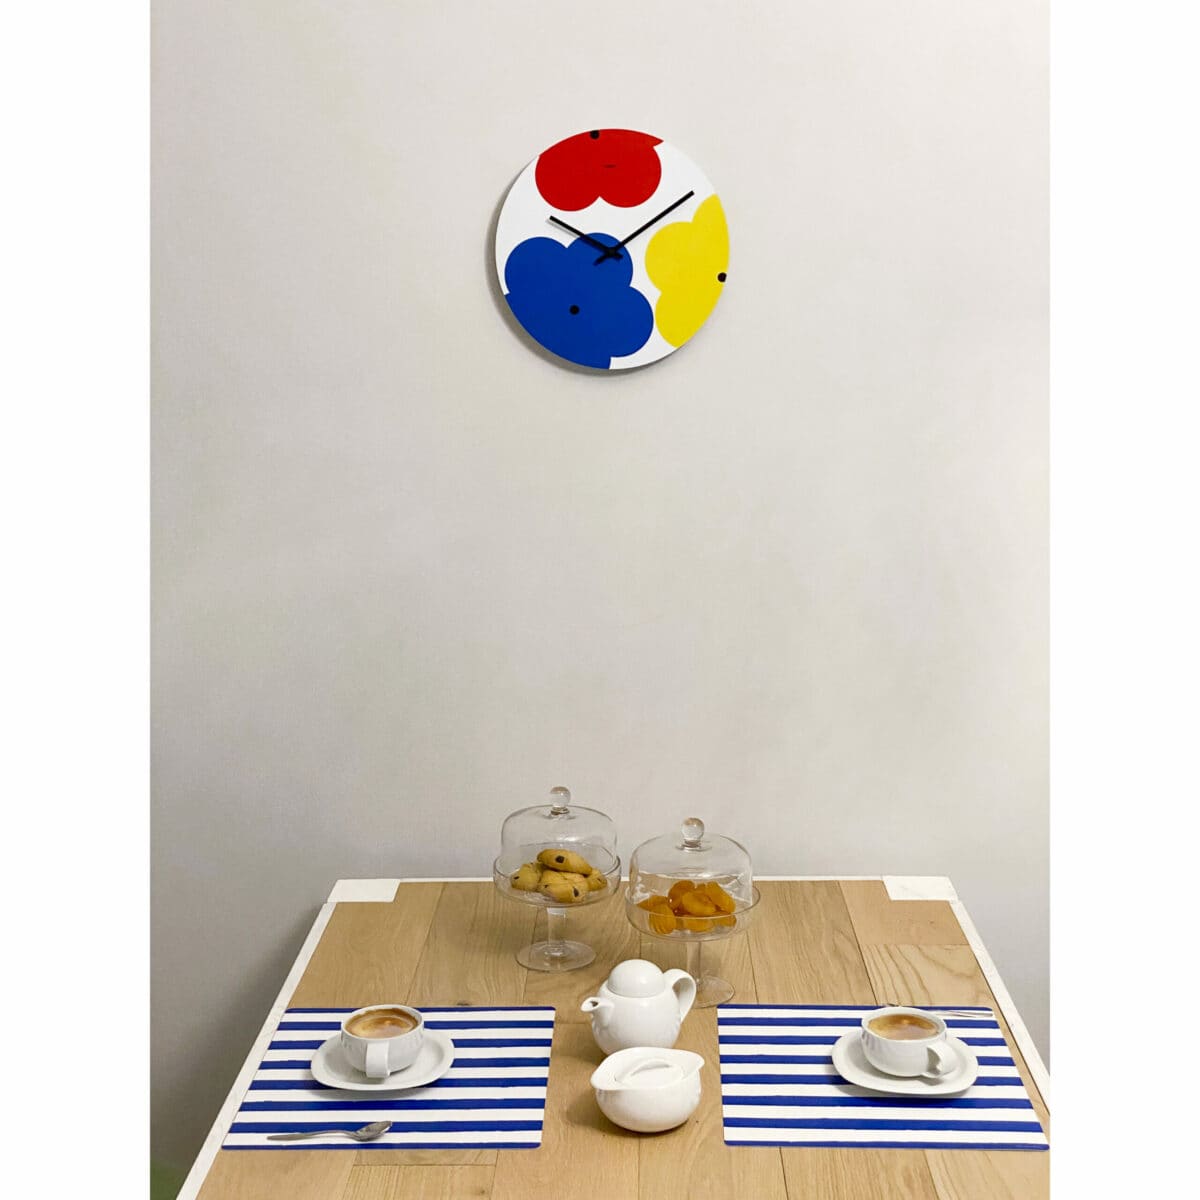 sopra un tavolo in legno apparecchiato per la colazione è appeso un orologio a muro di ispirazione pop, rotondo, raffigurante 3 maxi fiori stilizzati nei colori rosso, blu e giallo